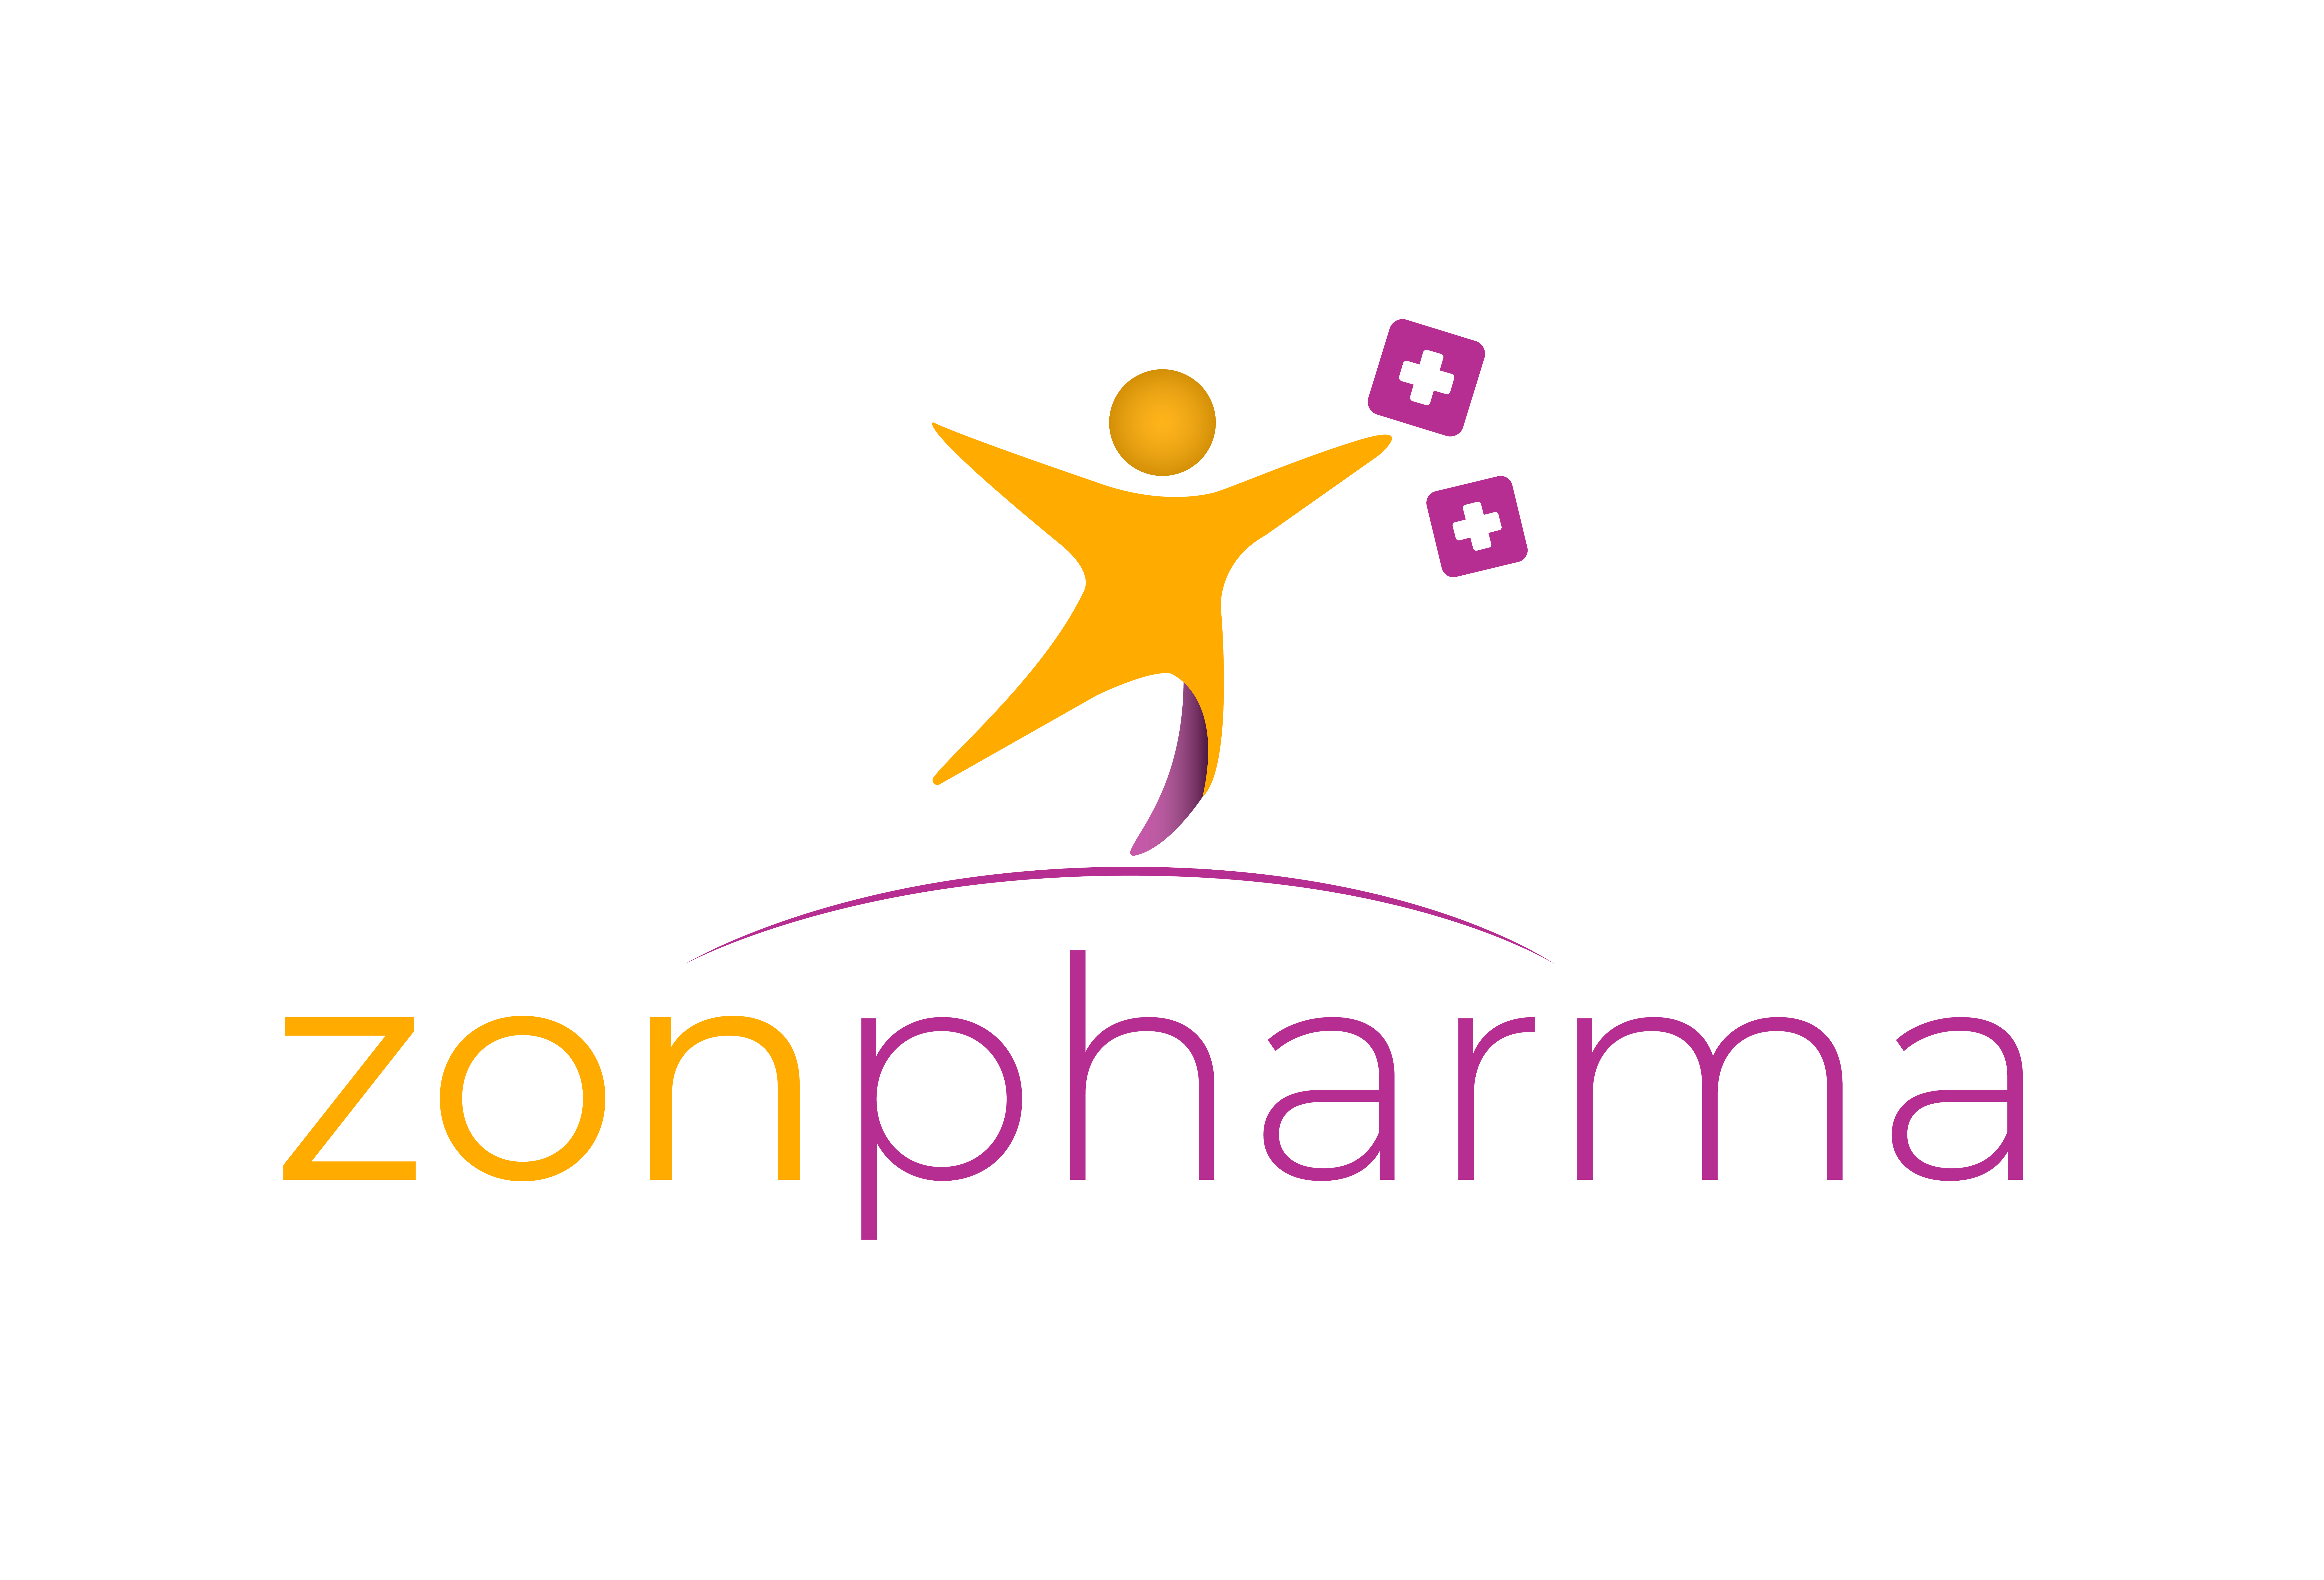 Zonpharma